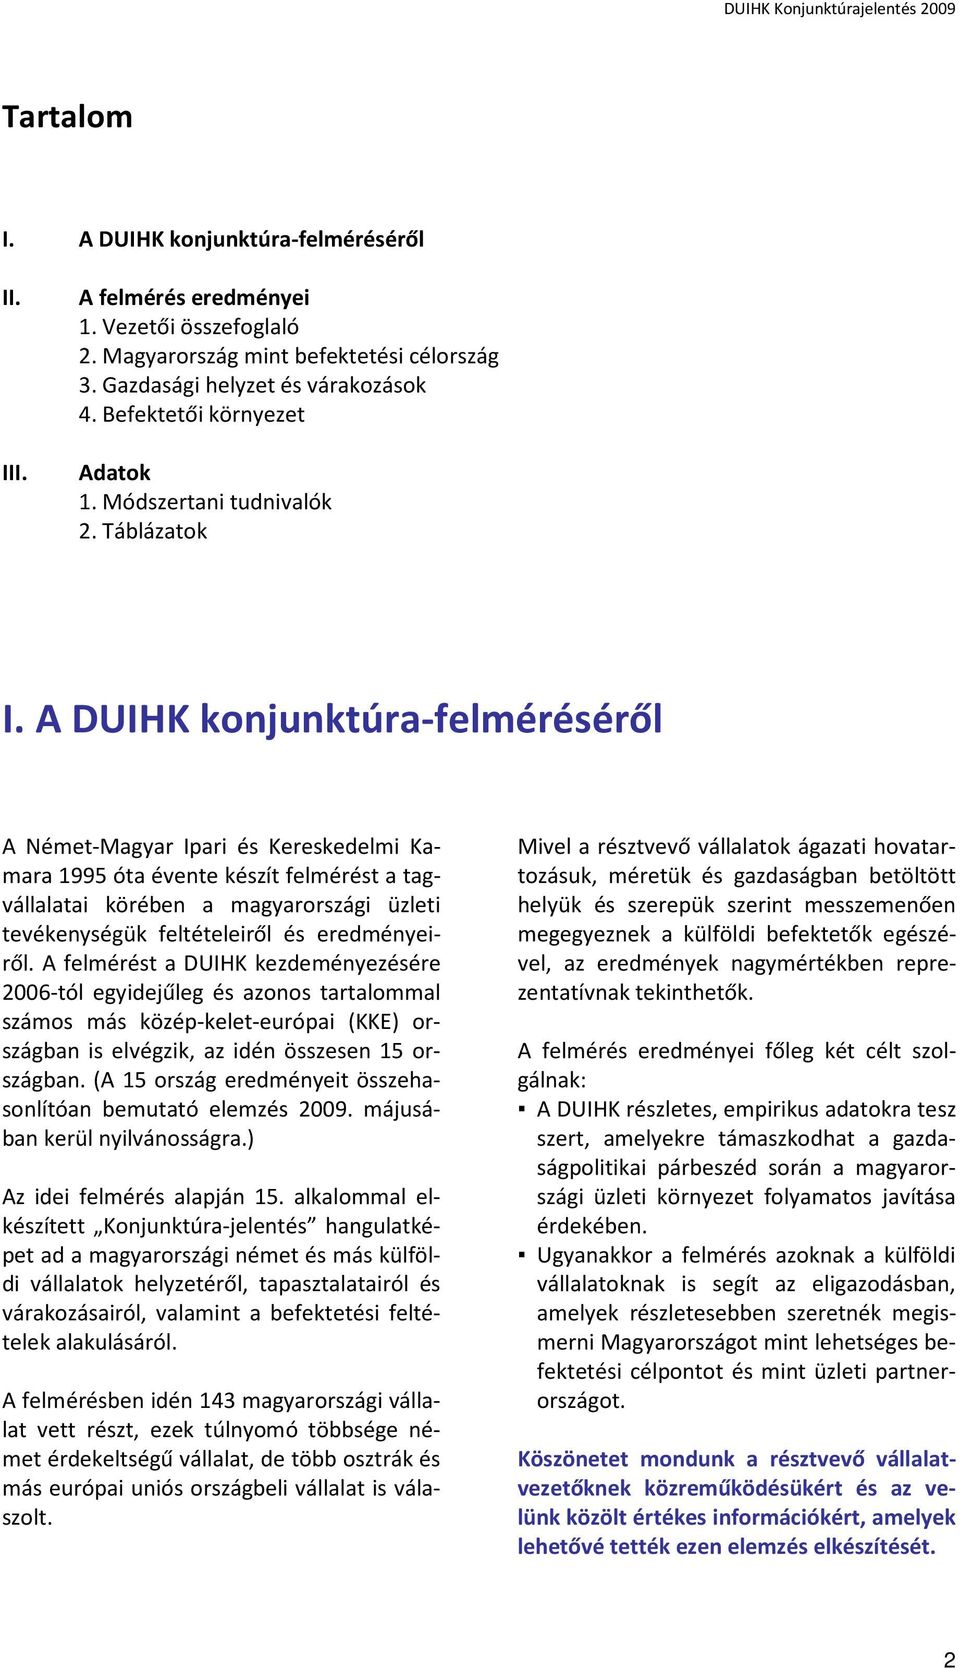 A DUIHK konjunktúra-felméréséről A Német-Magyar Ipari és Kereskedelmi Kamara 1995 óta évente készít felmérést a tagvállalatai körében a magyarországi üzleti tevékenységük feltételeiről és